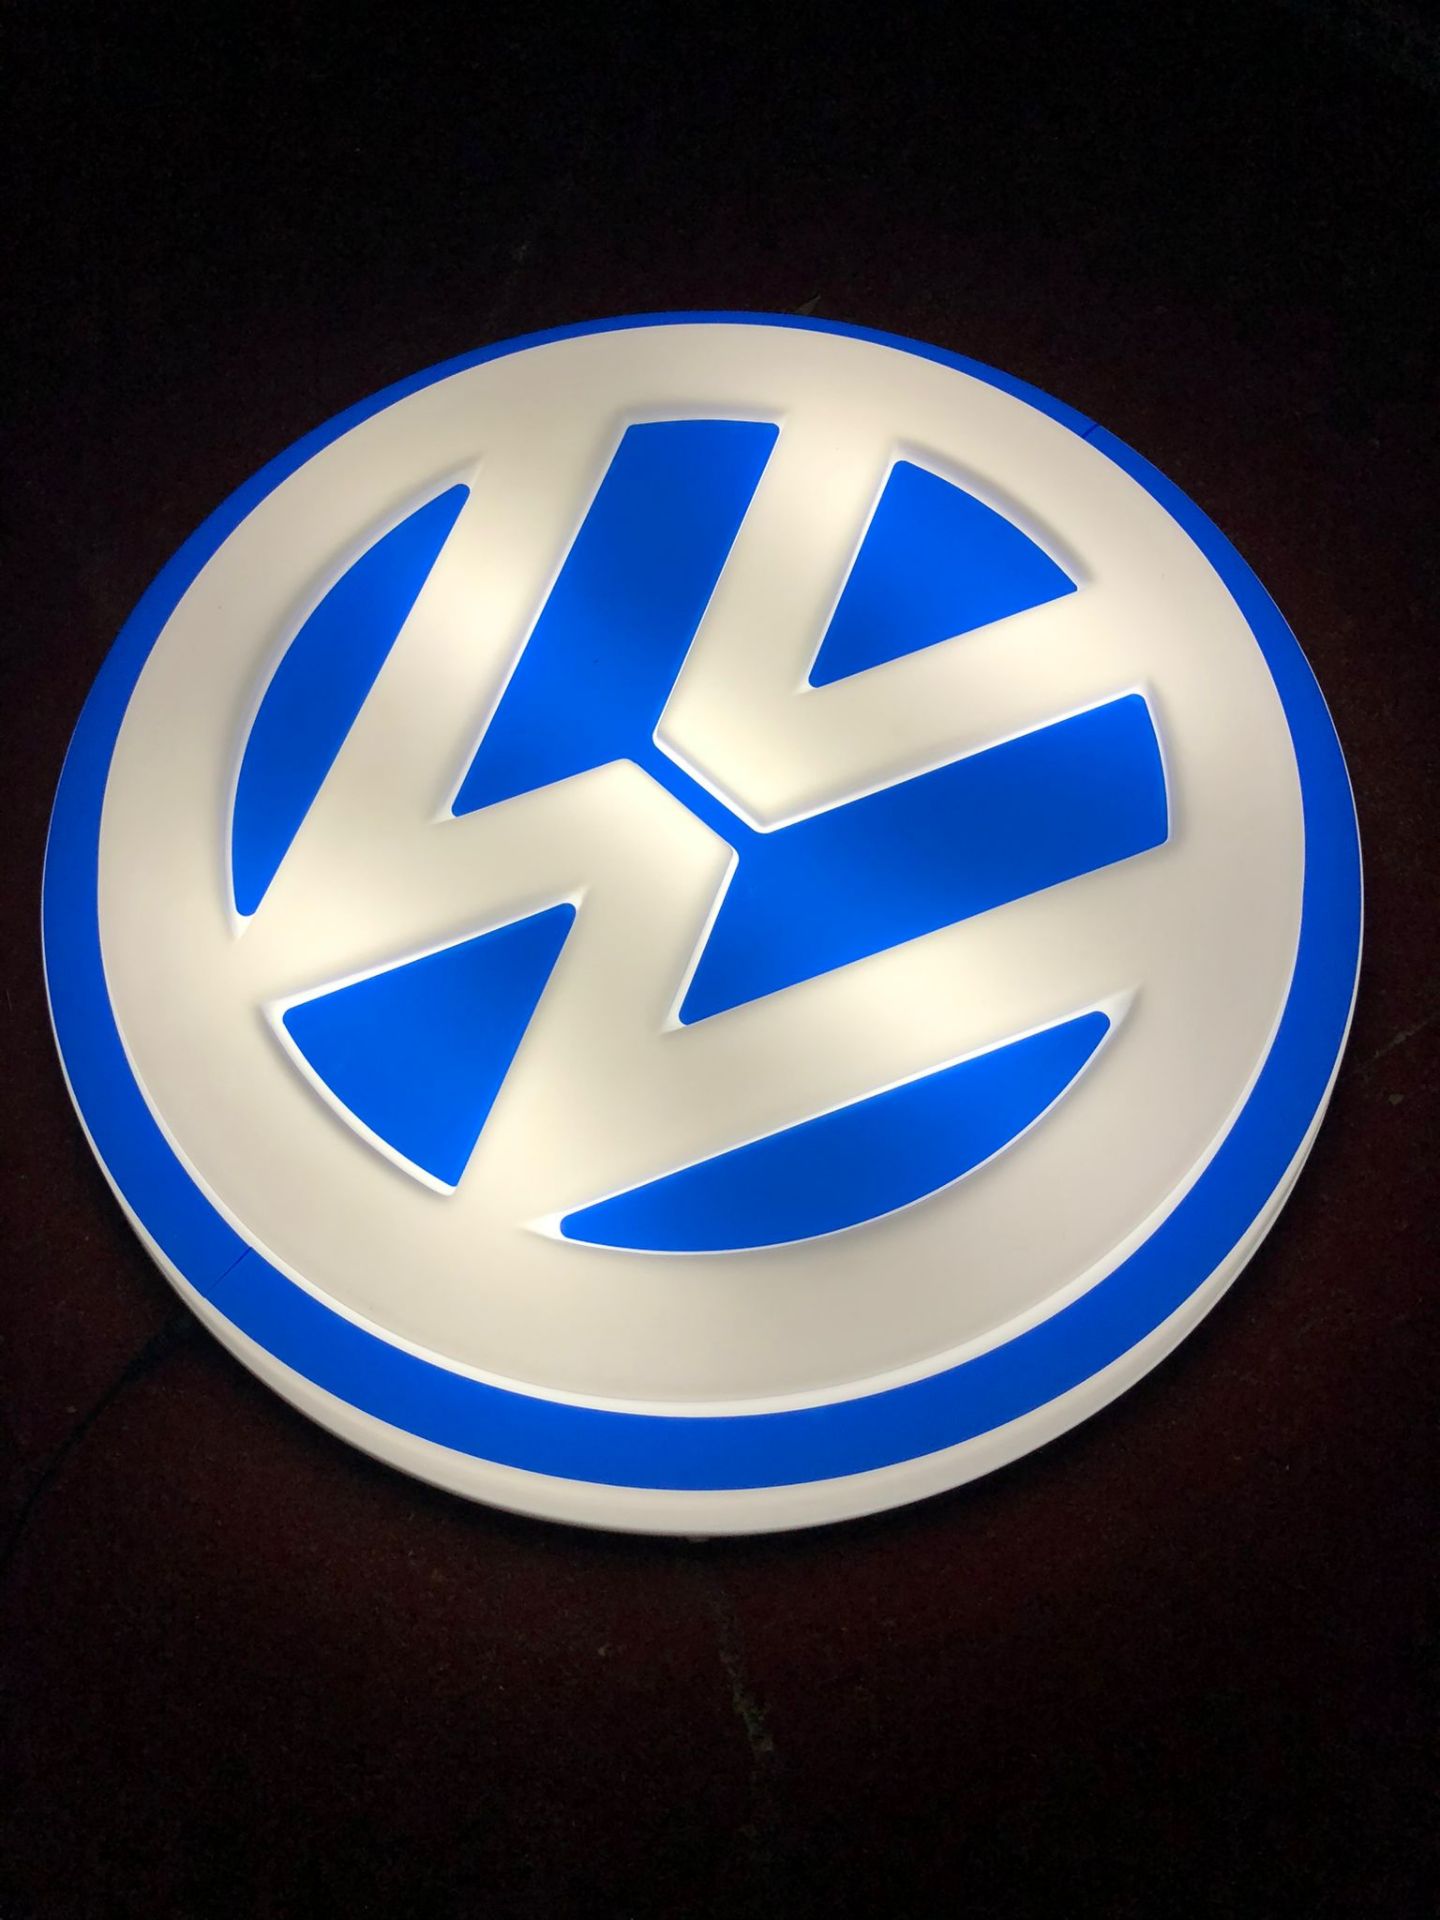 VW illuminated sign - Image 2 of 3